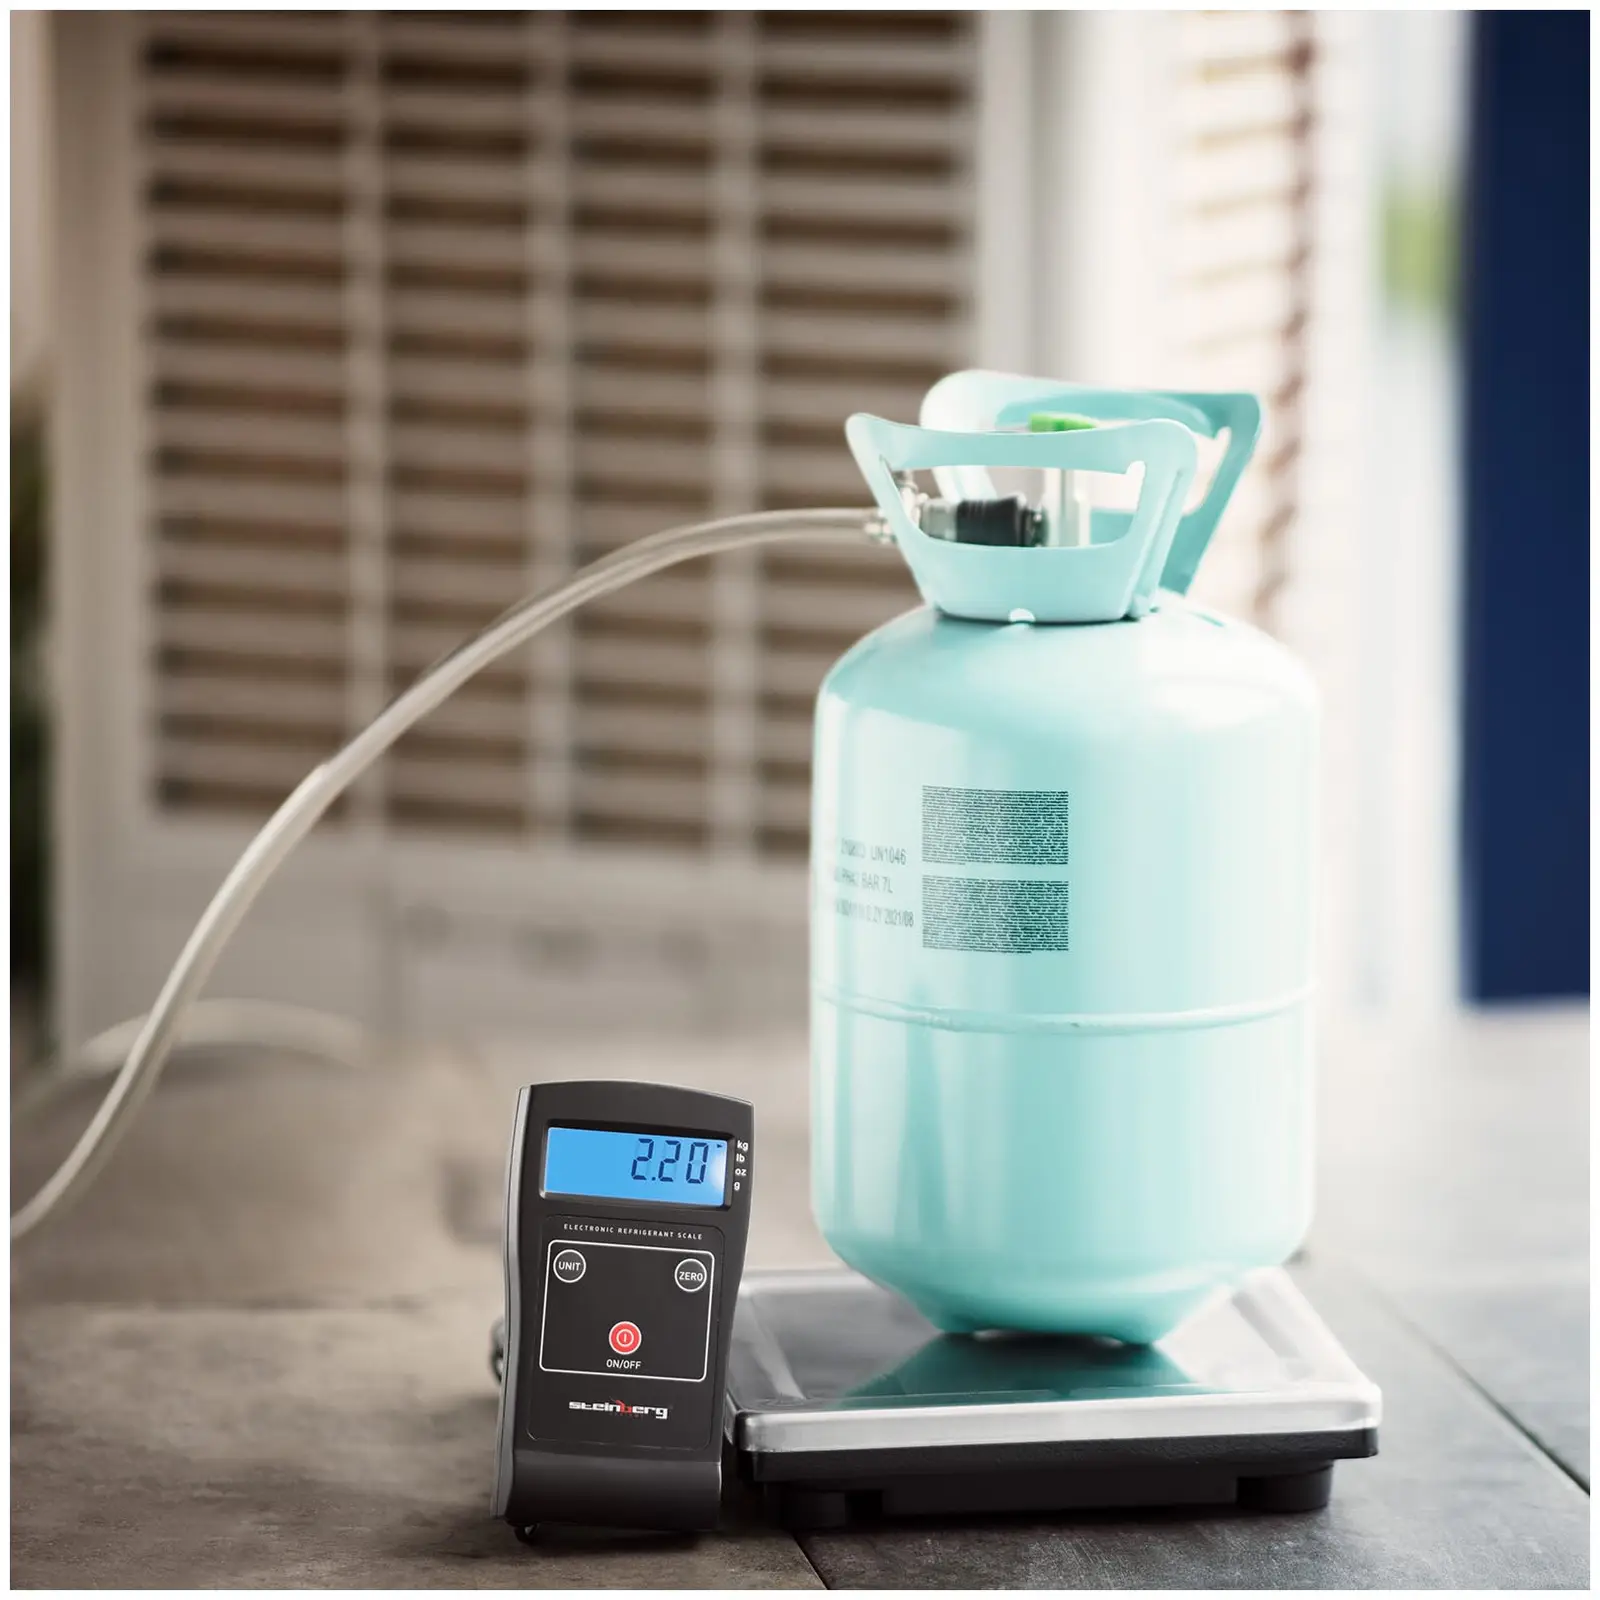 Refrigerant Scale - 80 kg - Precision: 0.02 kg - kg / lb / g / oz